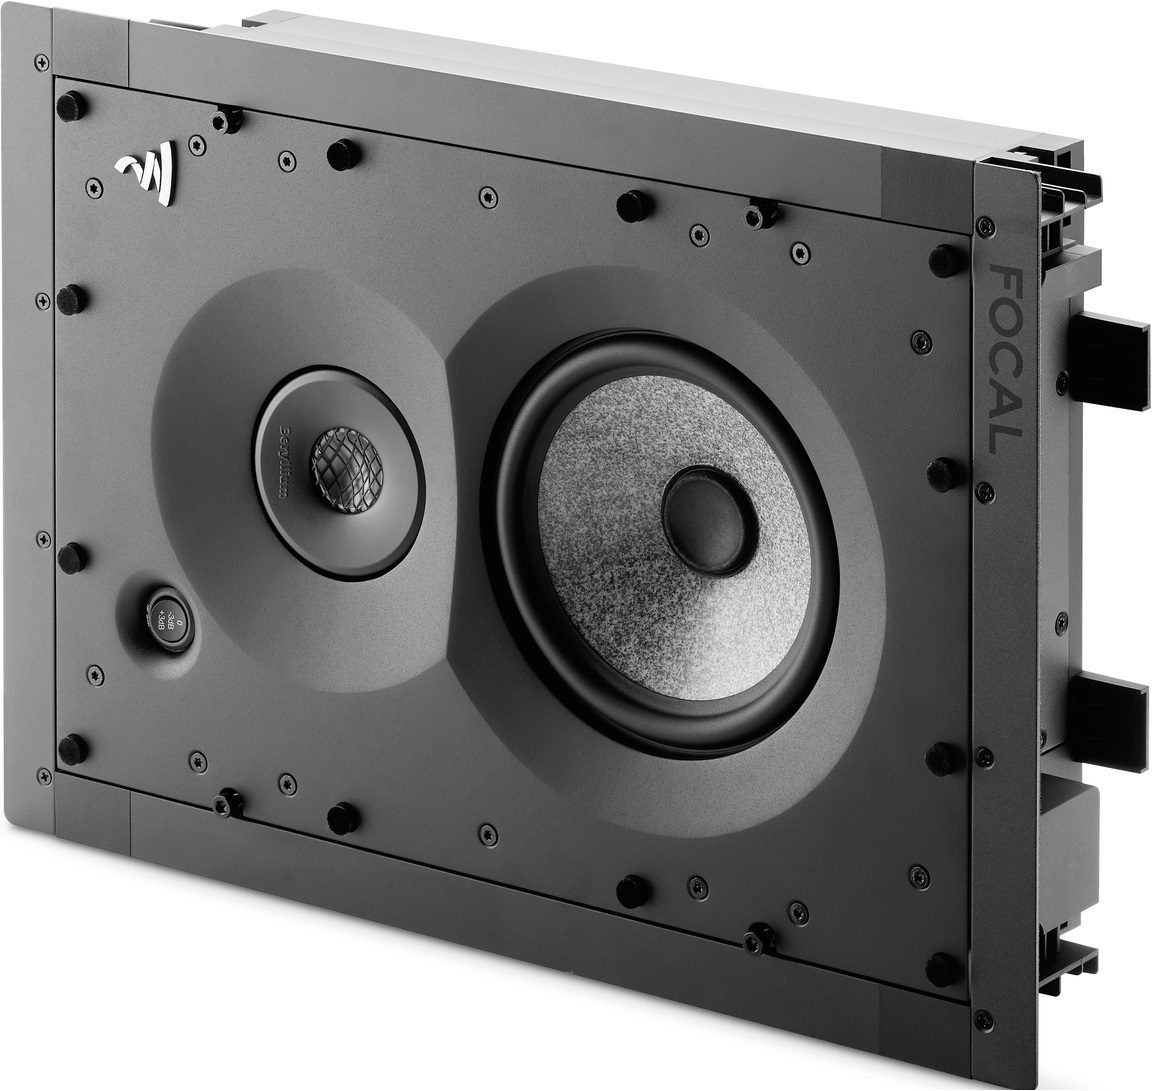 Focal 1000 IW6 - Inbouw speaker